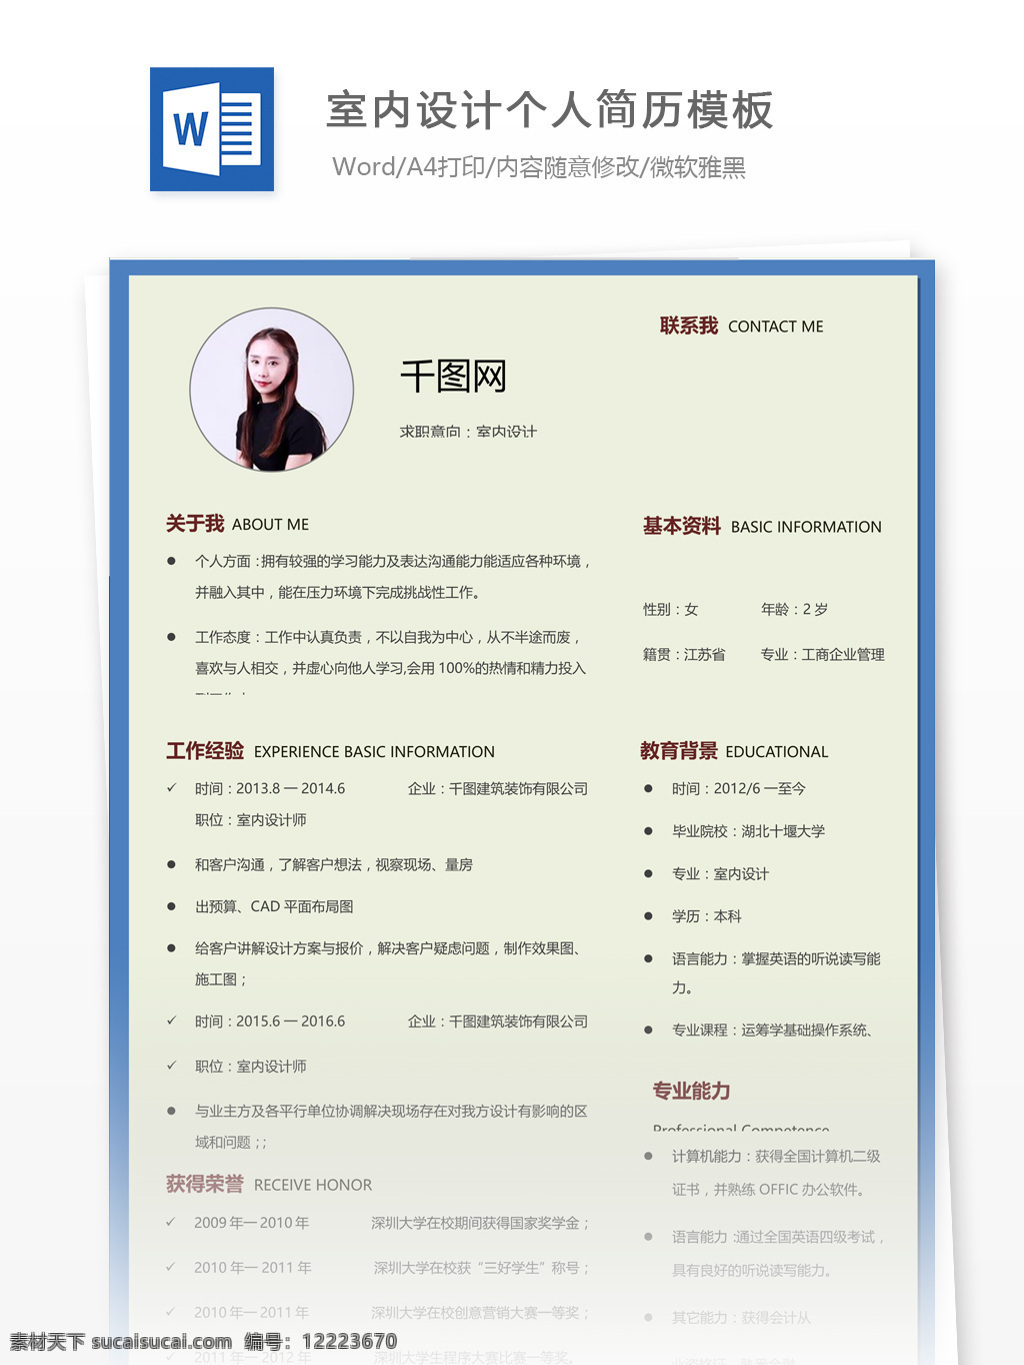 王维 室内 设计师 中文 简历 简历模板 个人简历模板 个人简历 室内设计 应届生